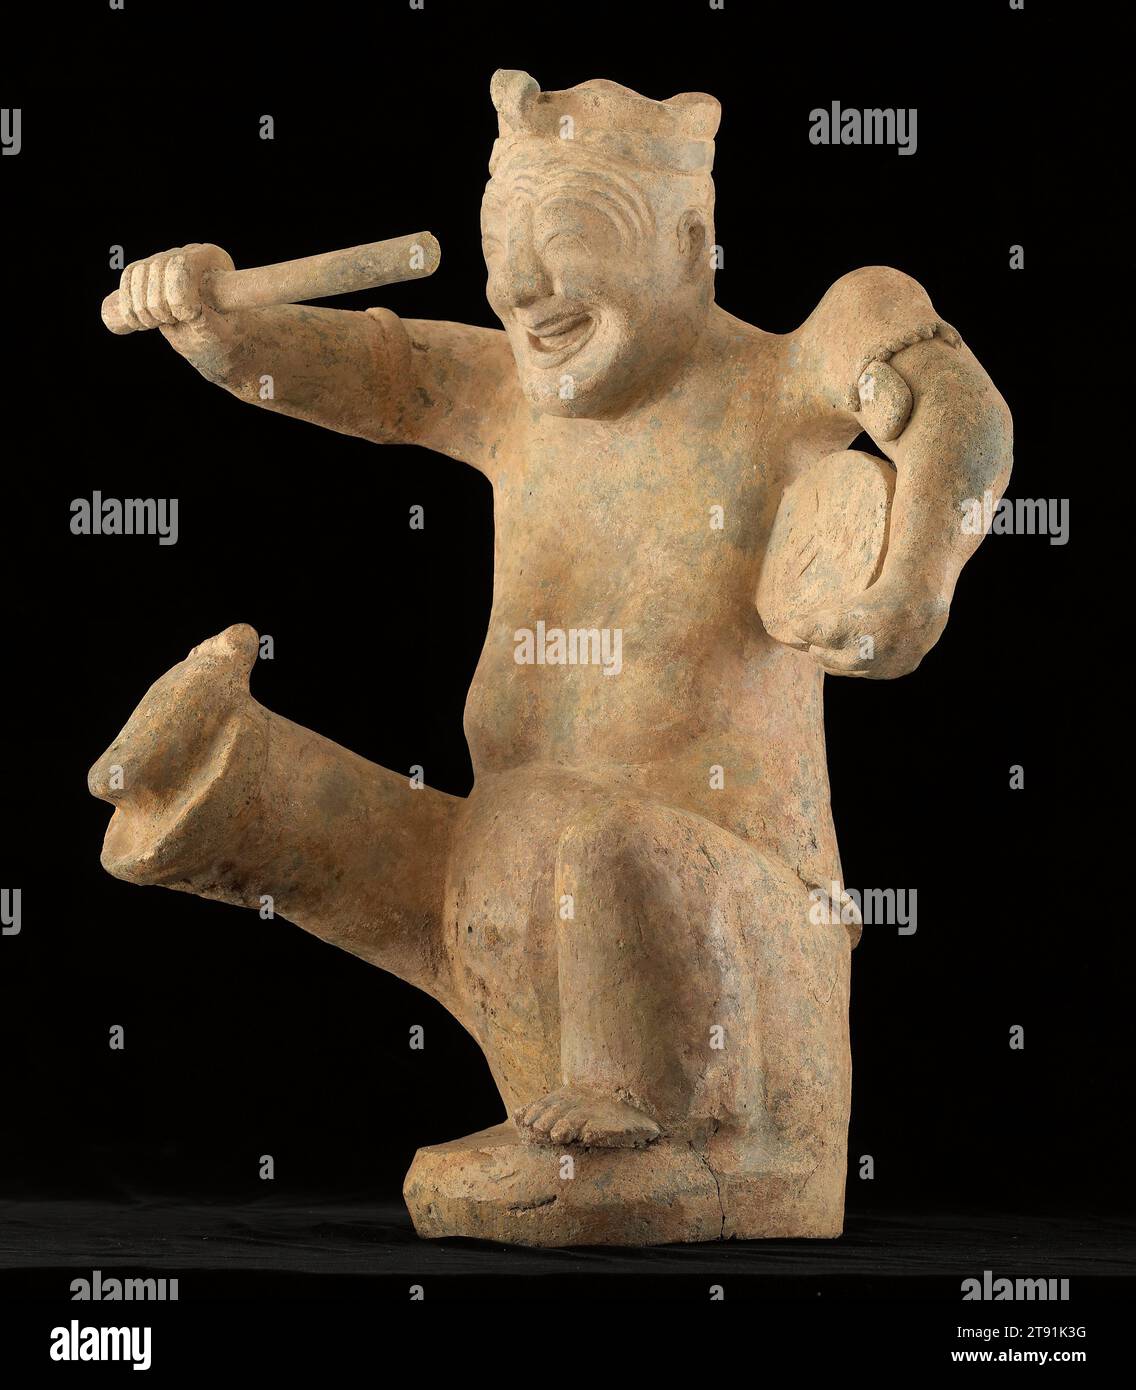 Figur eines hockenden Schlagzeugers, 1.-2. Jahrhundert, 23 3/4 x 17 x 15 3/4 Zoll. (60,33 x 43,18 x 40,01 cm), Steingut, China, 1.-2. Jahrhundert, komische Karikaturen von Künstlern waren besonders beliebt in der Provinz Sichuan während der östlichen Han-Dynastie (25–220 n. Chr.). Sie wurden als Grabfiguren verwendet und sorgten für Unterhaltung im Jenseits, und eine ganze Truppe könnte mit dem Verstorbenen beigesetzt werden. Trommler wie der hier vertretene spezialisierten sich auf eine Art Erzählkunst, die teils gesprochen, teils gesungen wurde. Dieser singt fröhlich, seine Stirn ist zerknittert vor Lachen. Sein schwerer Körper deutet darauf hin, dass er ein Zwerg ist Stockfoto